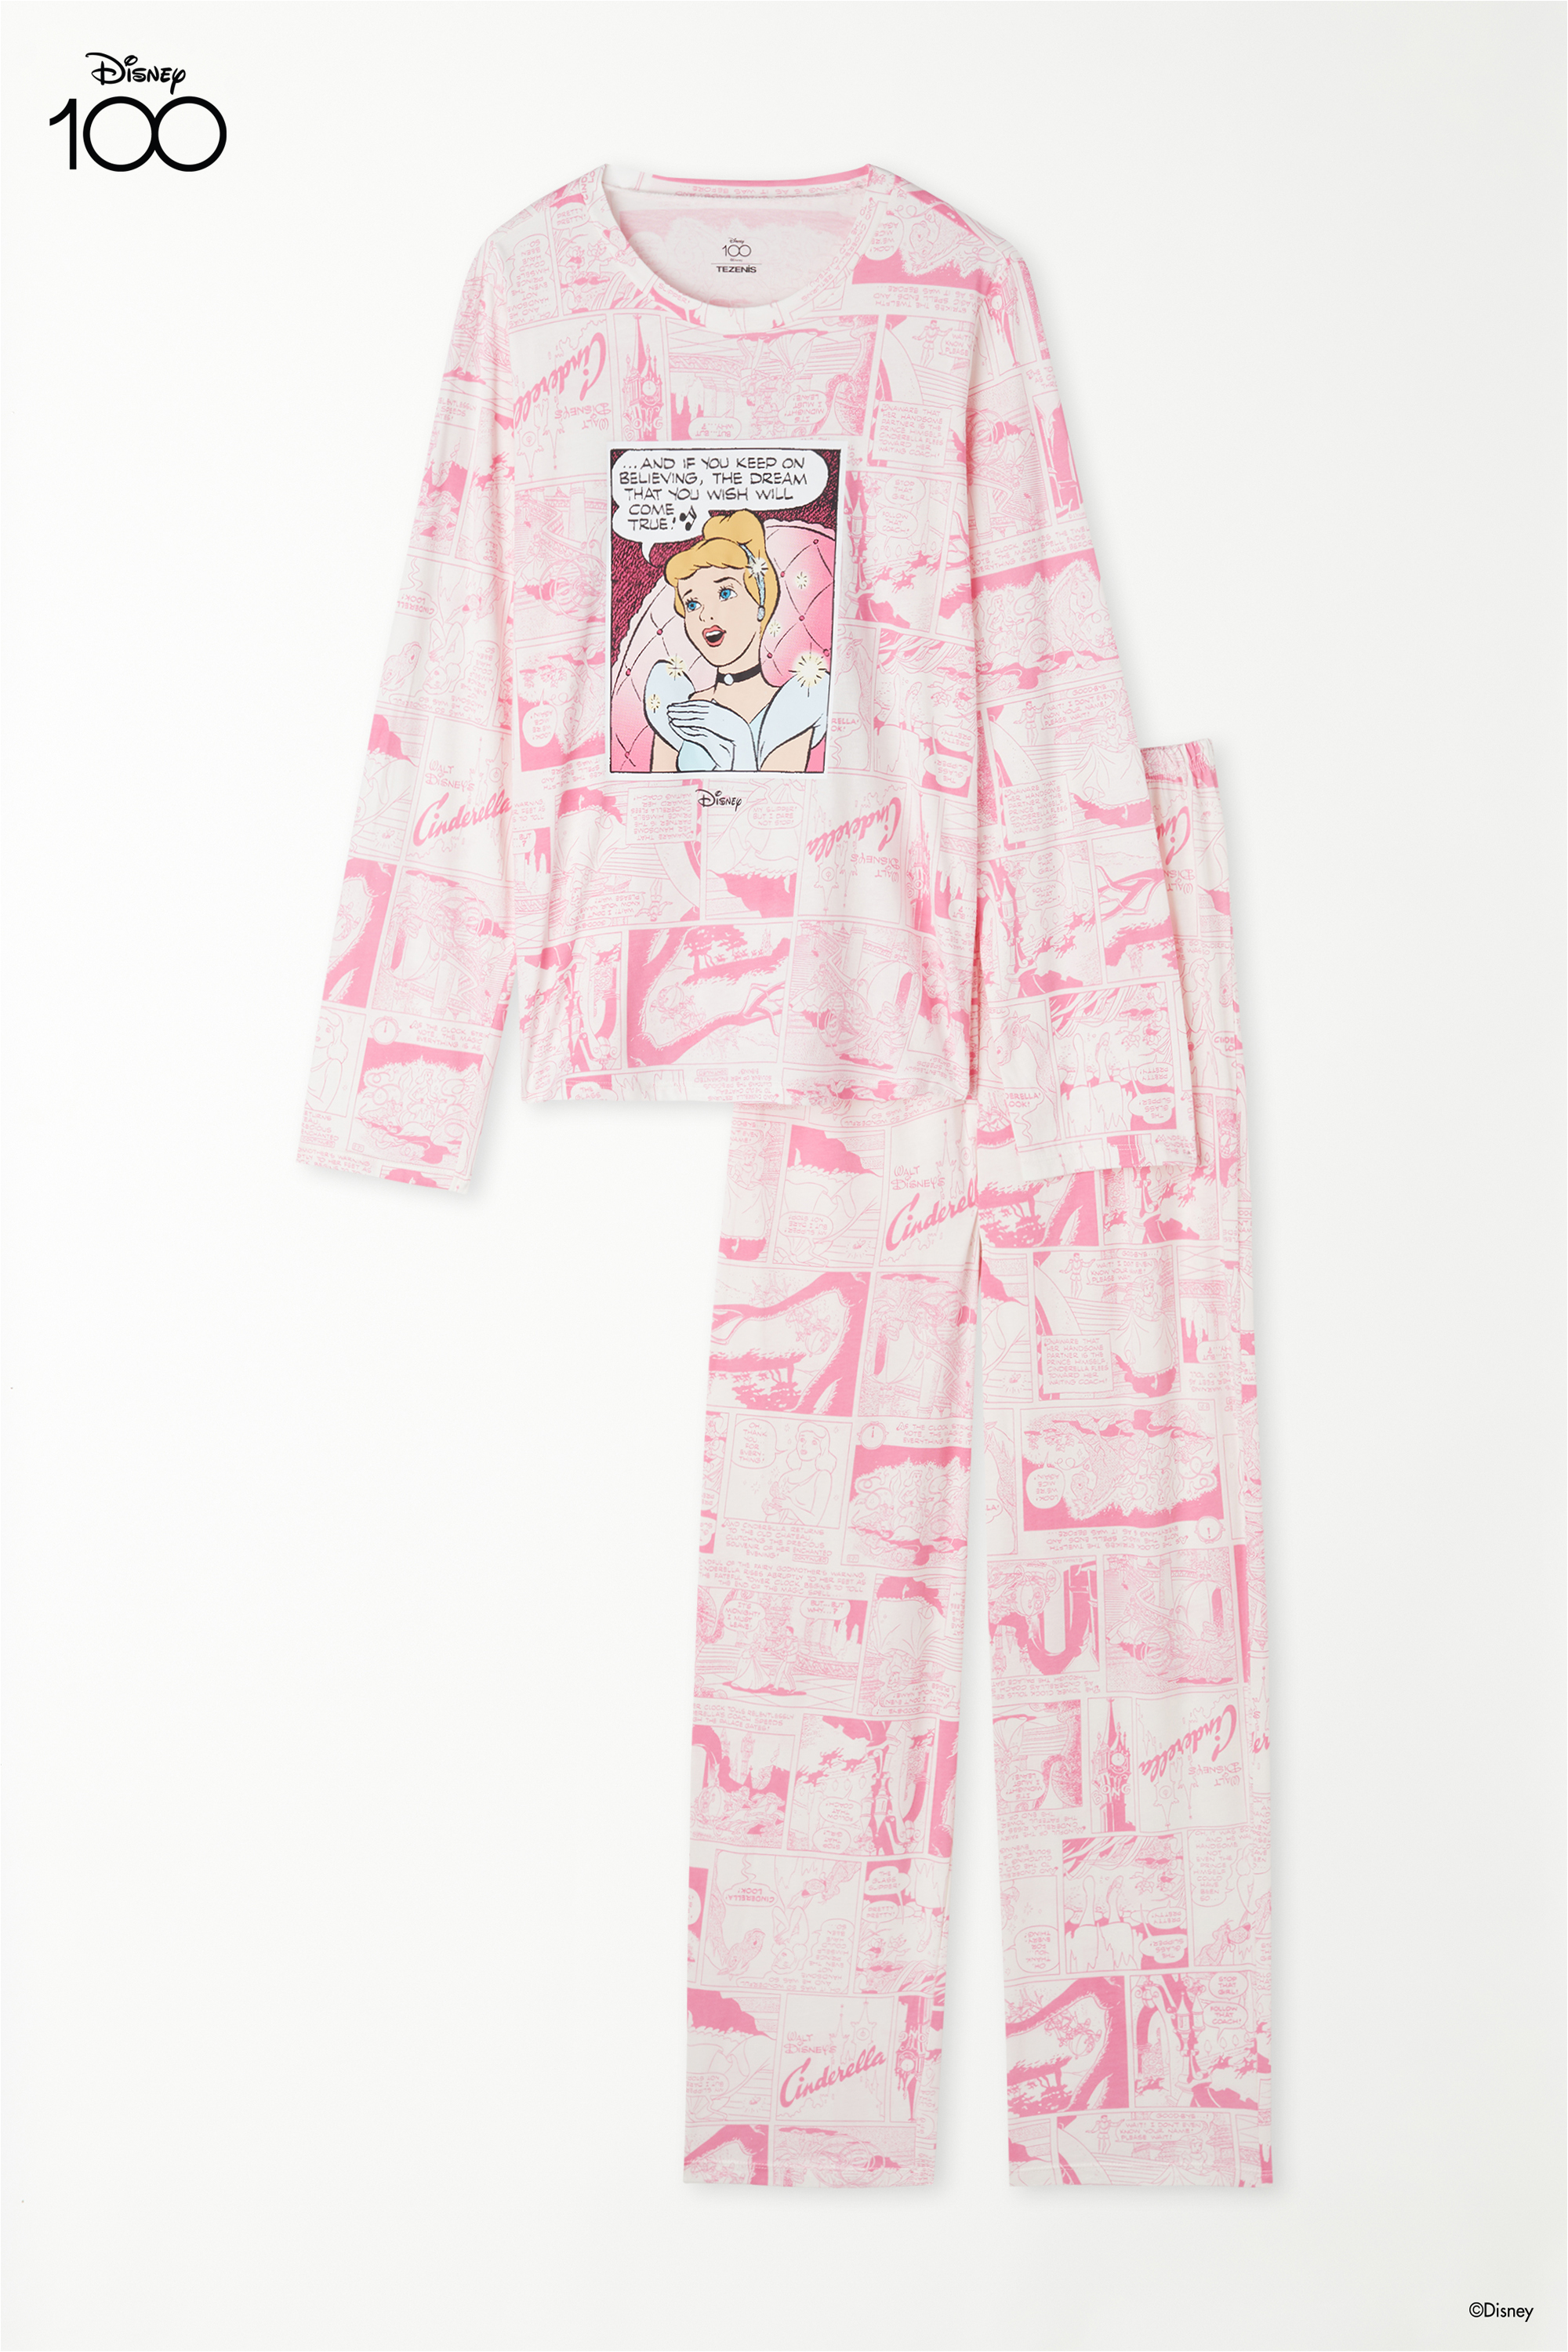 Full-Length Disney 100 Print Cotton Pajamas